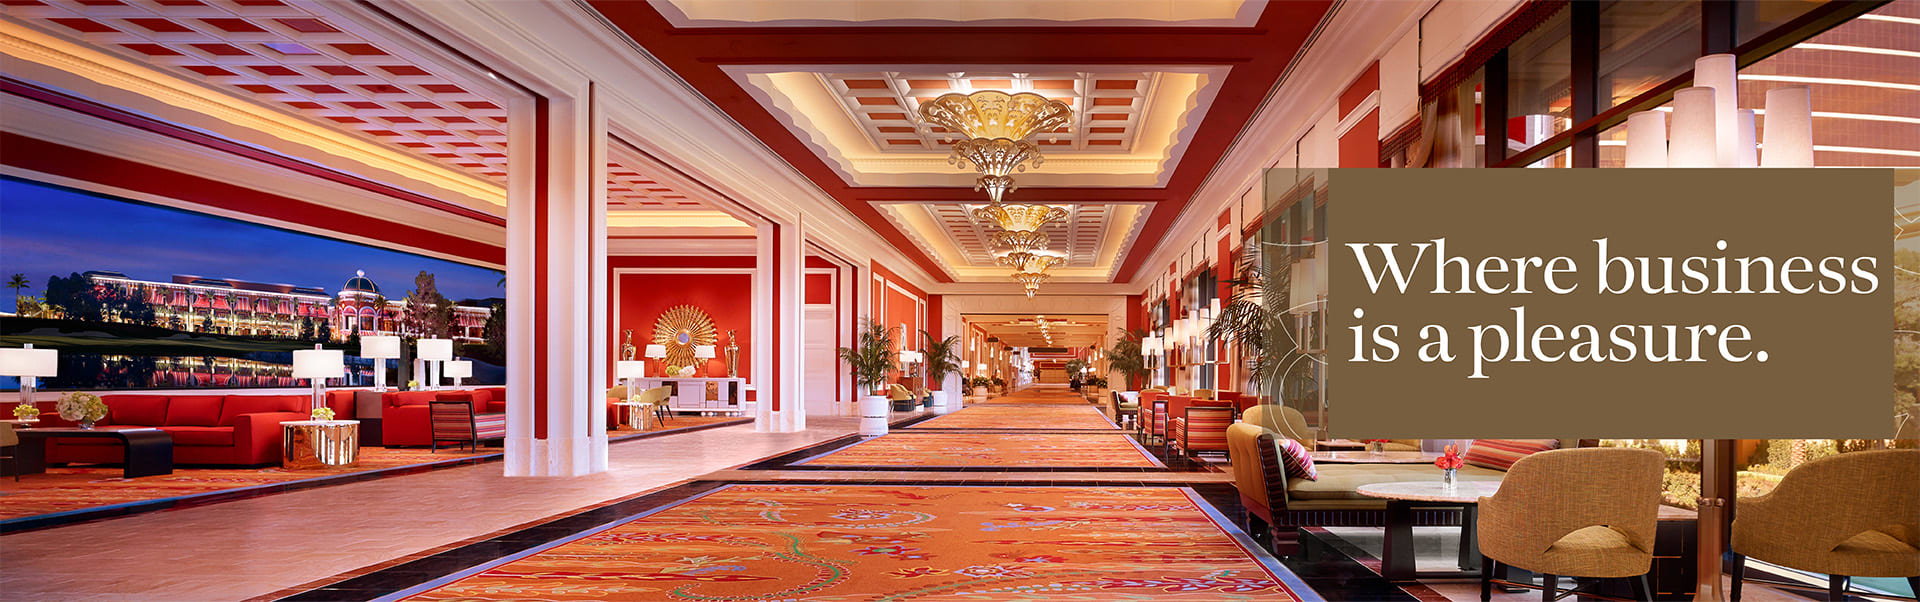 Resorts Casino Hotel Floor Plans, Meeting Rooms